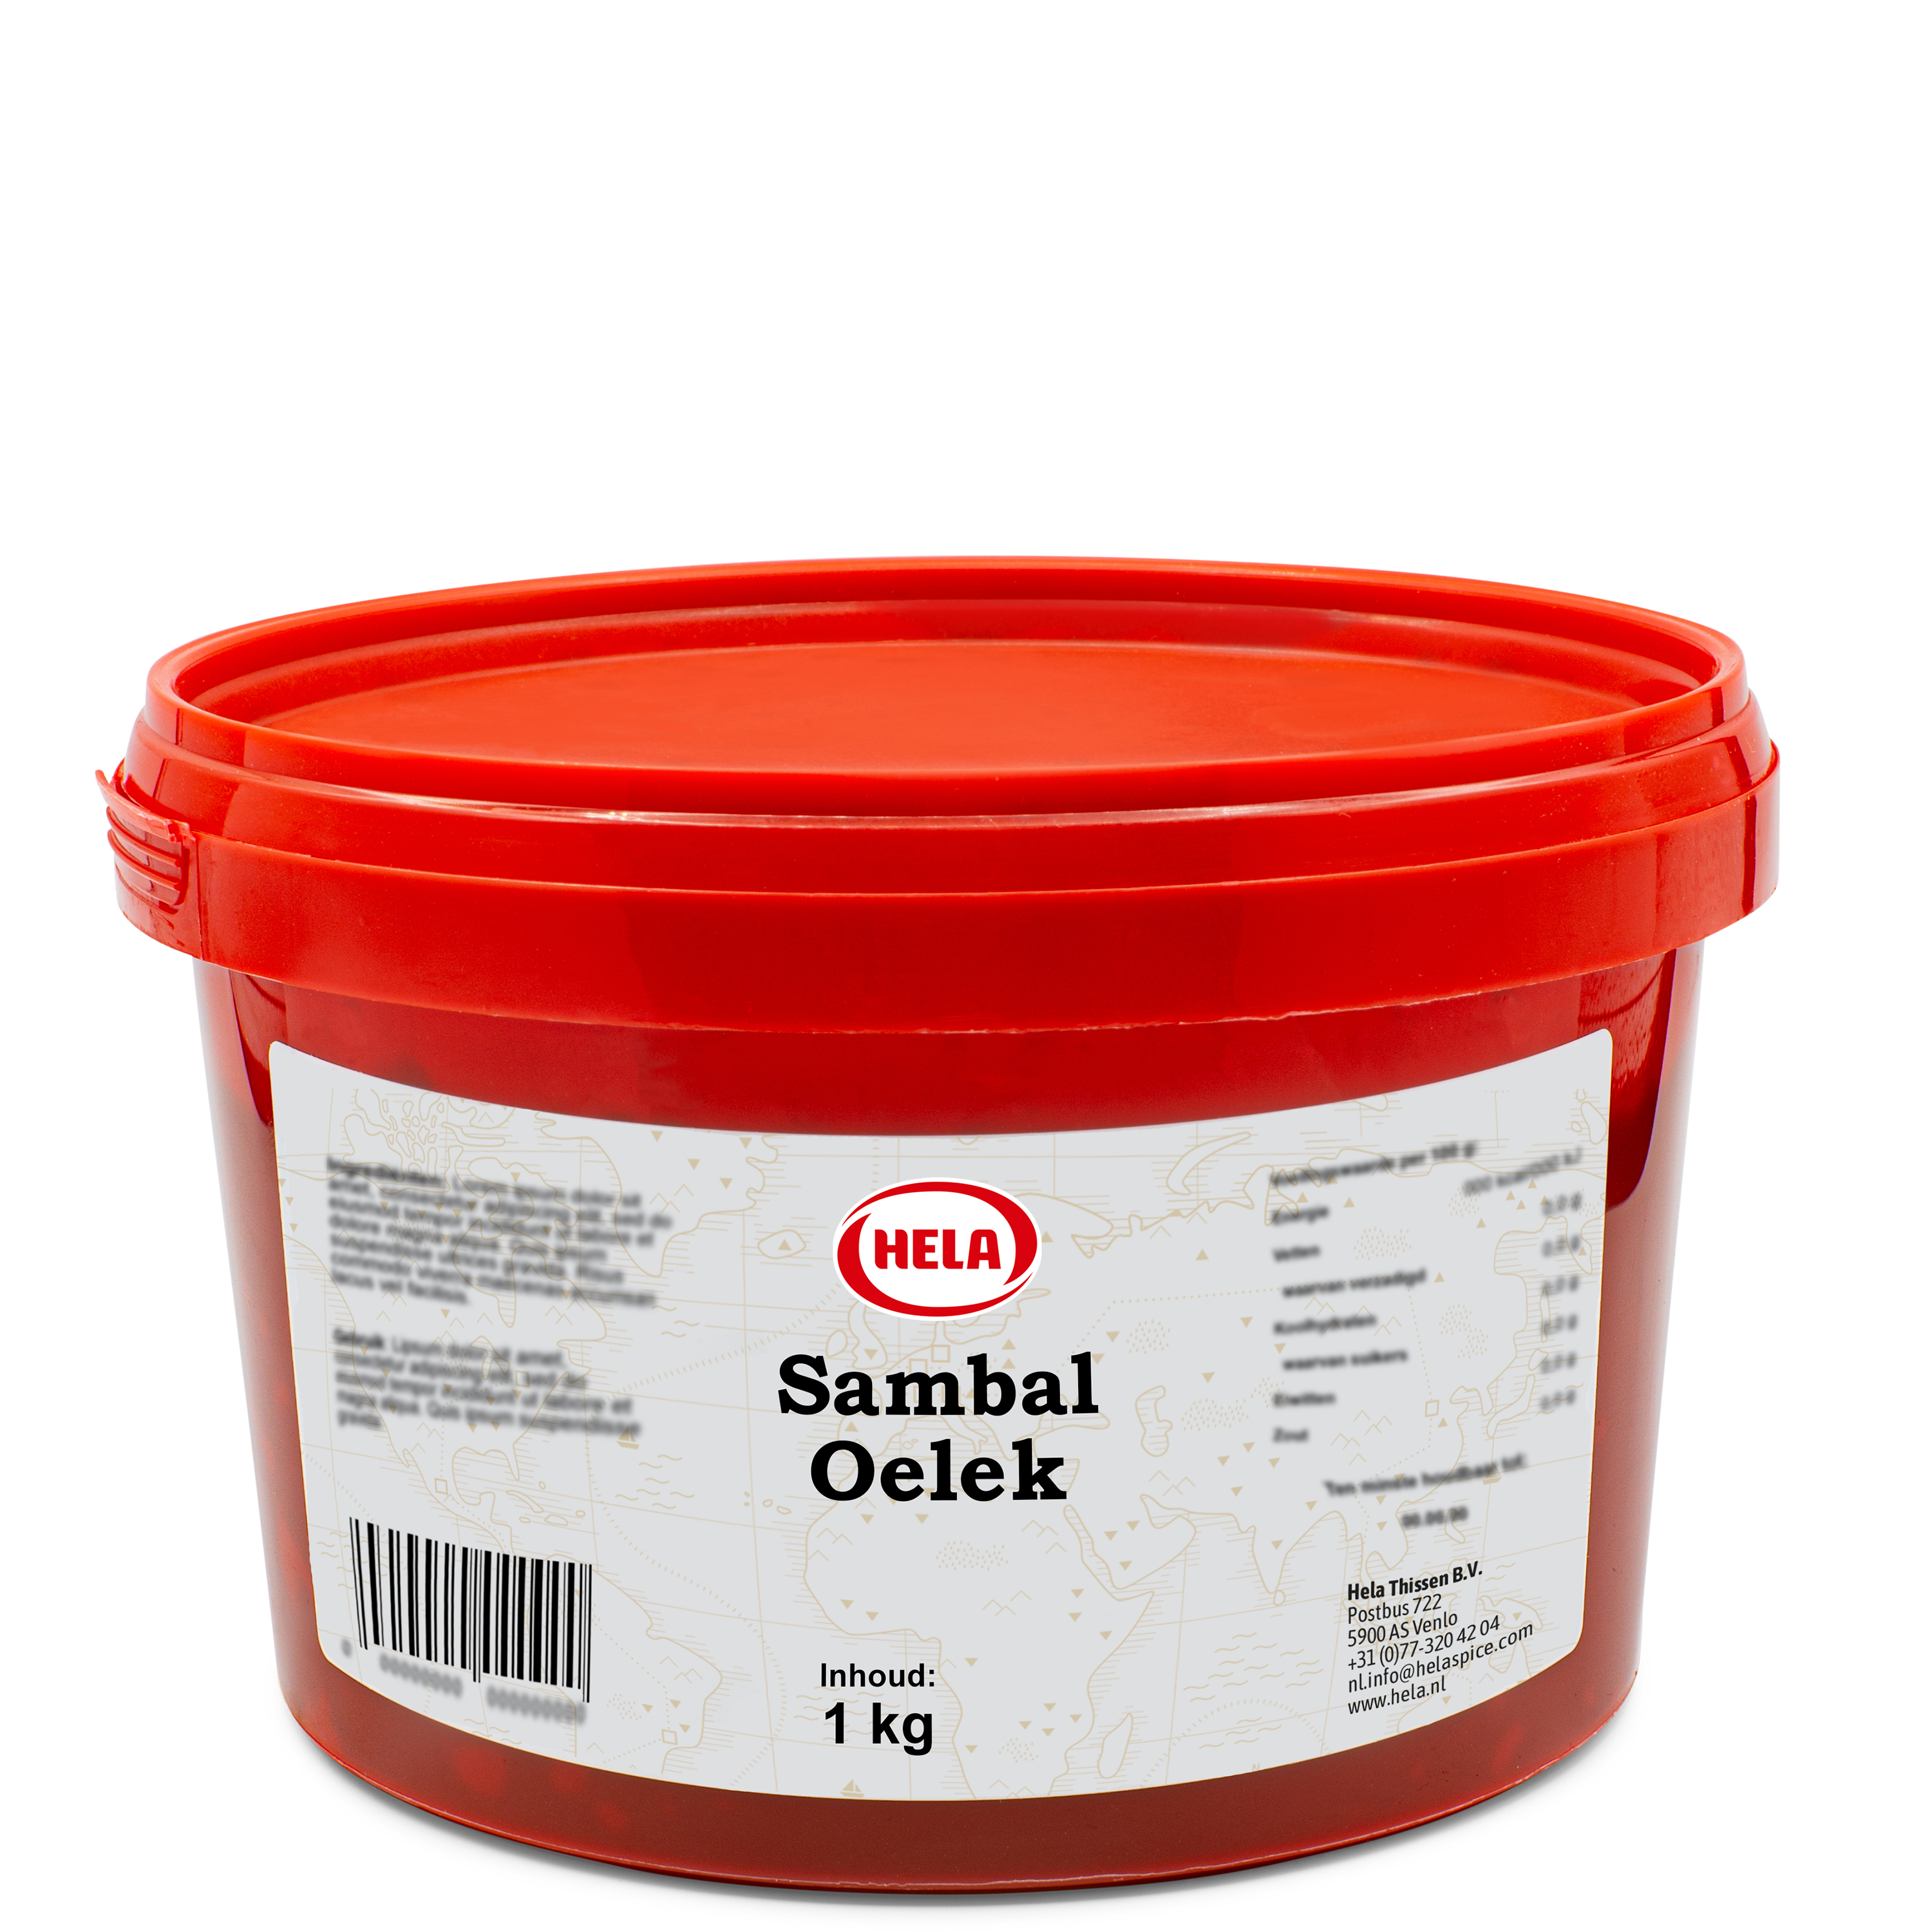 hela-sambal-oelek-1-kg.png